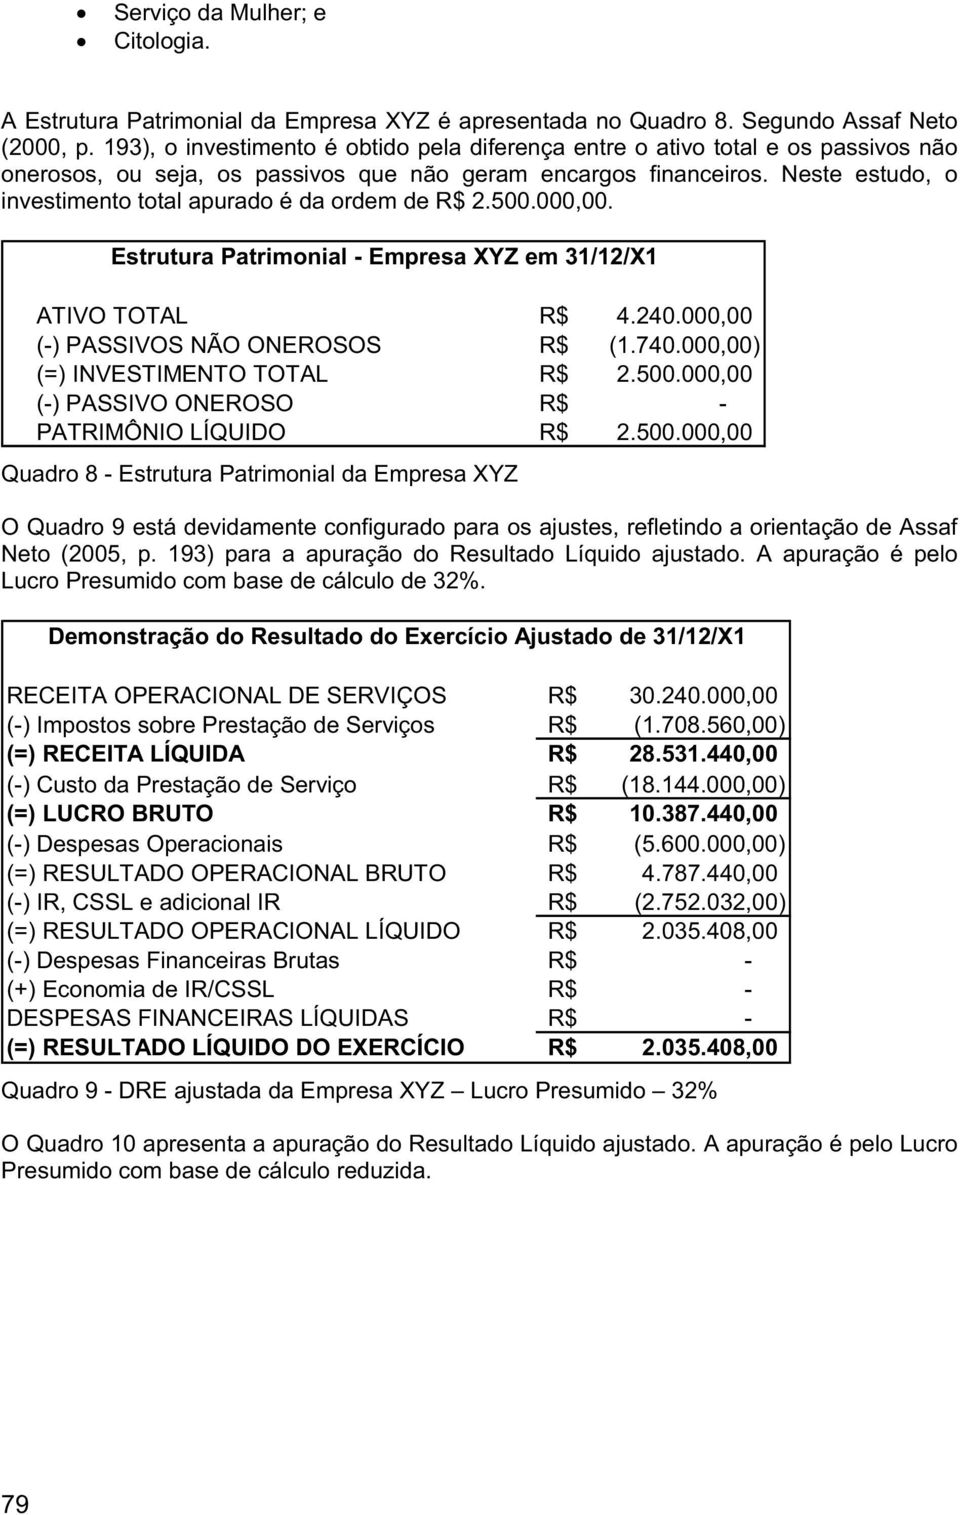 Neste estudo, o investimento total apurado é da ordem de R$ 2.500.000,00. Estrutura Patrimonial - Empresa XYZ em 31/12/X1 ATIVO TOTAL R$ 4.240.000,00 (-) PASSIVOS NÃO ONEROSOS R$ (1.740.